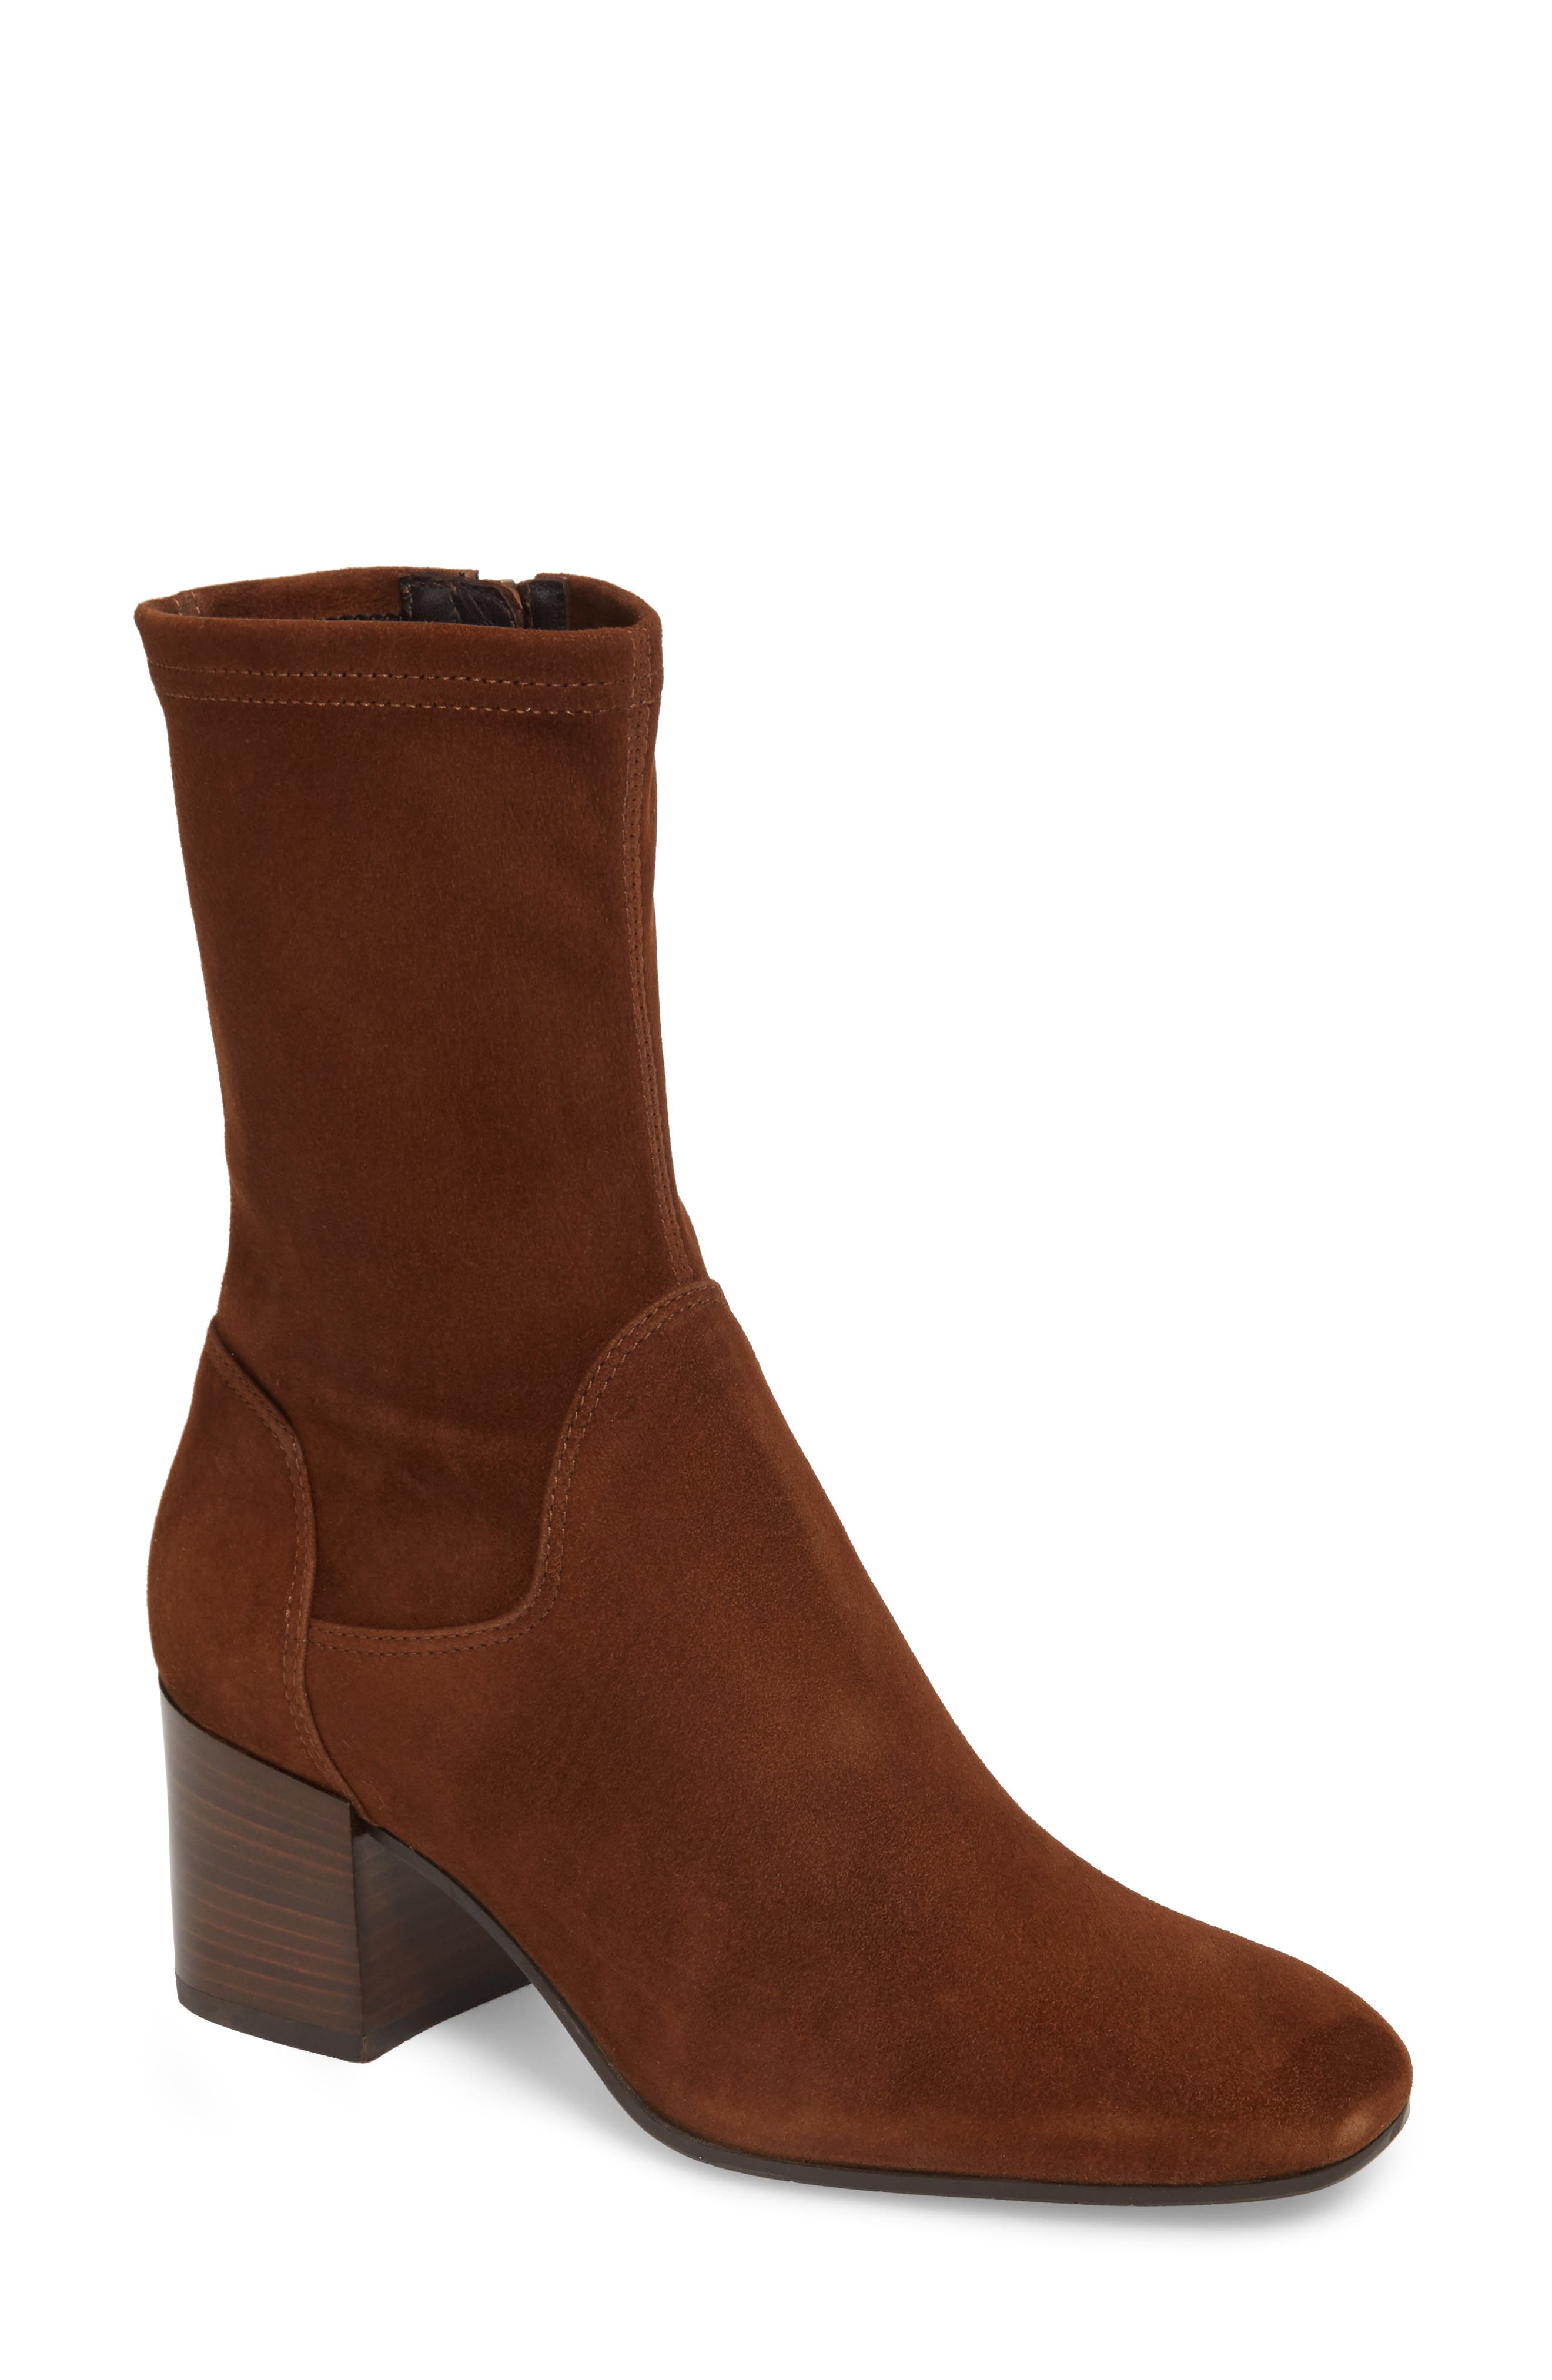 aquatalia brown boots